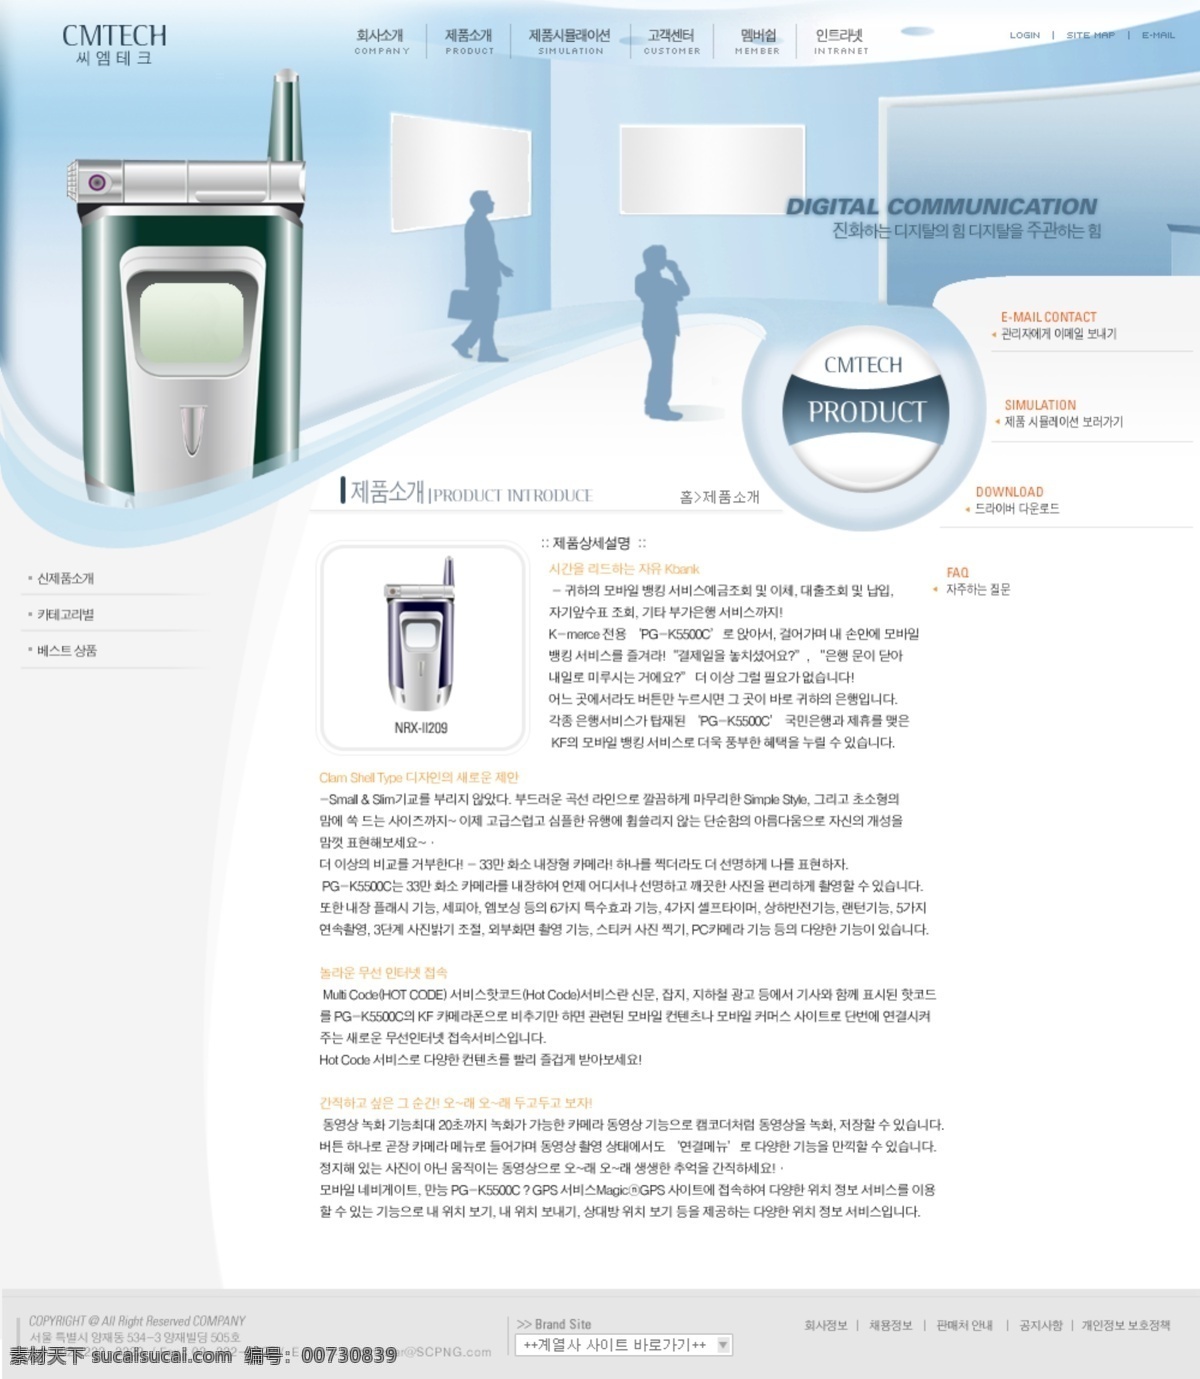 韩国 cmtech 公司 官方网站 模板 网页模板 网页素材